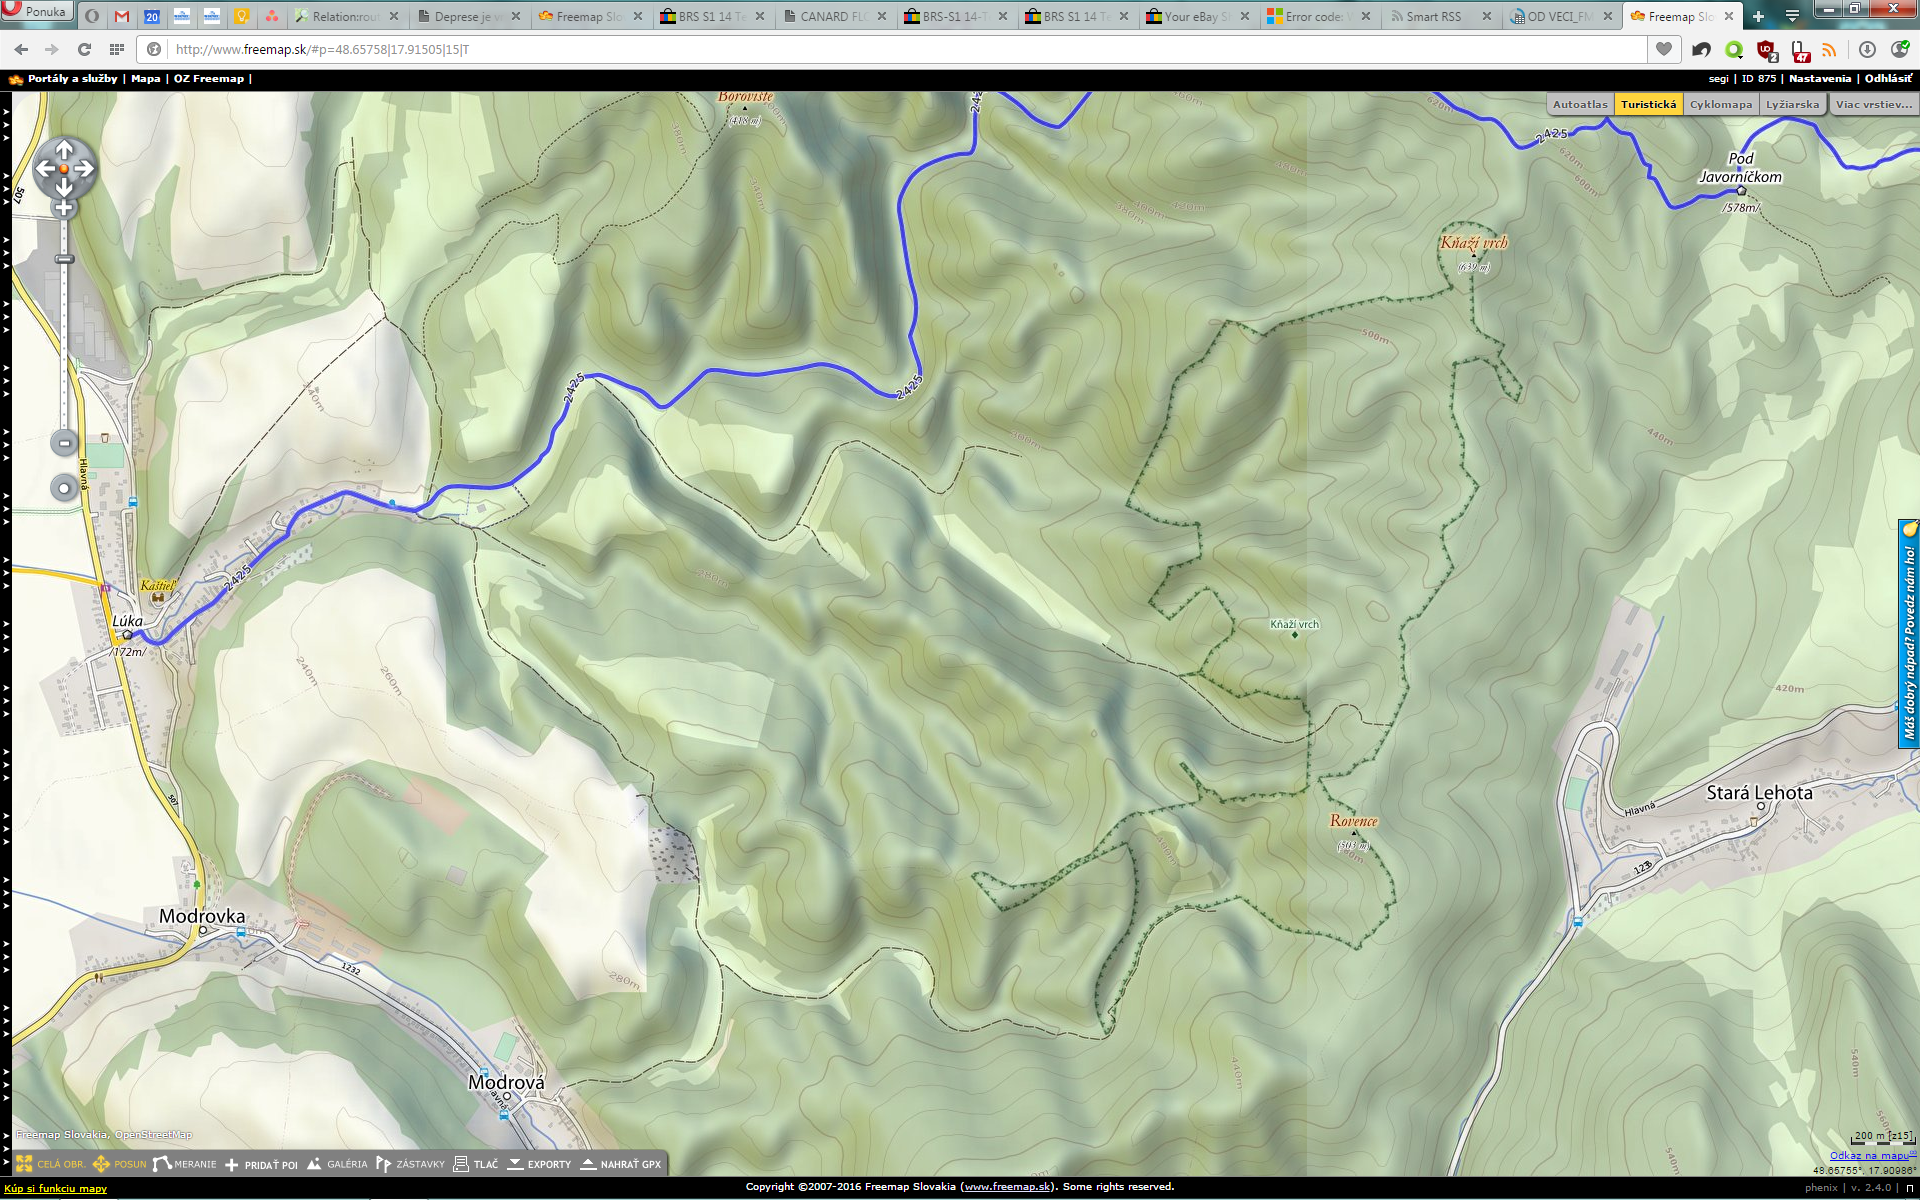 Re: [osm_sk] Freemap Hiking pre Locus